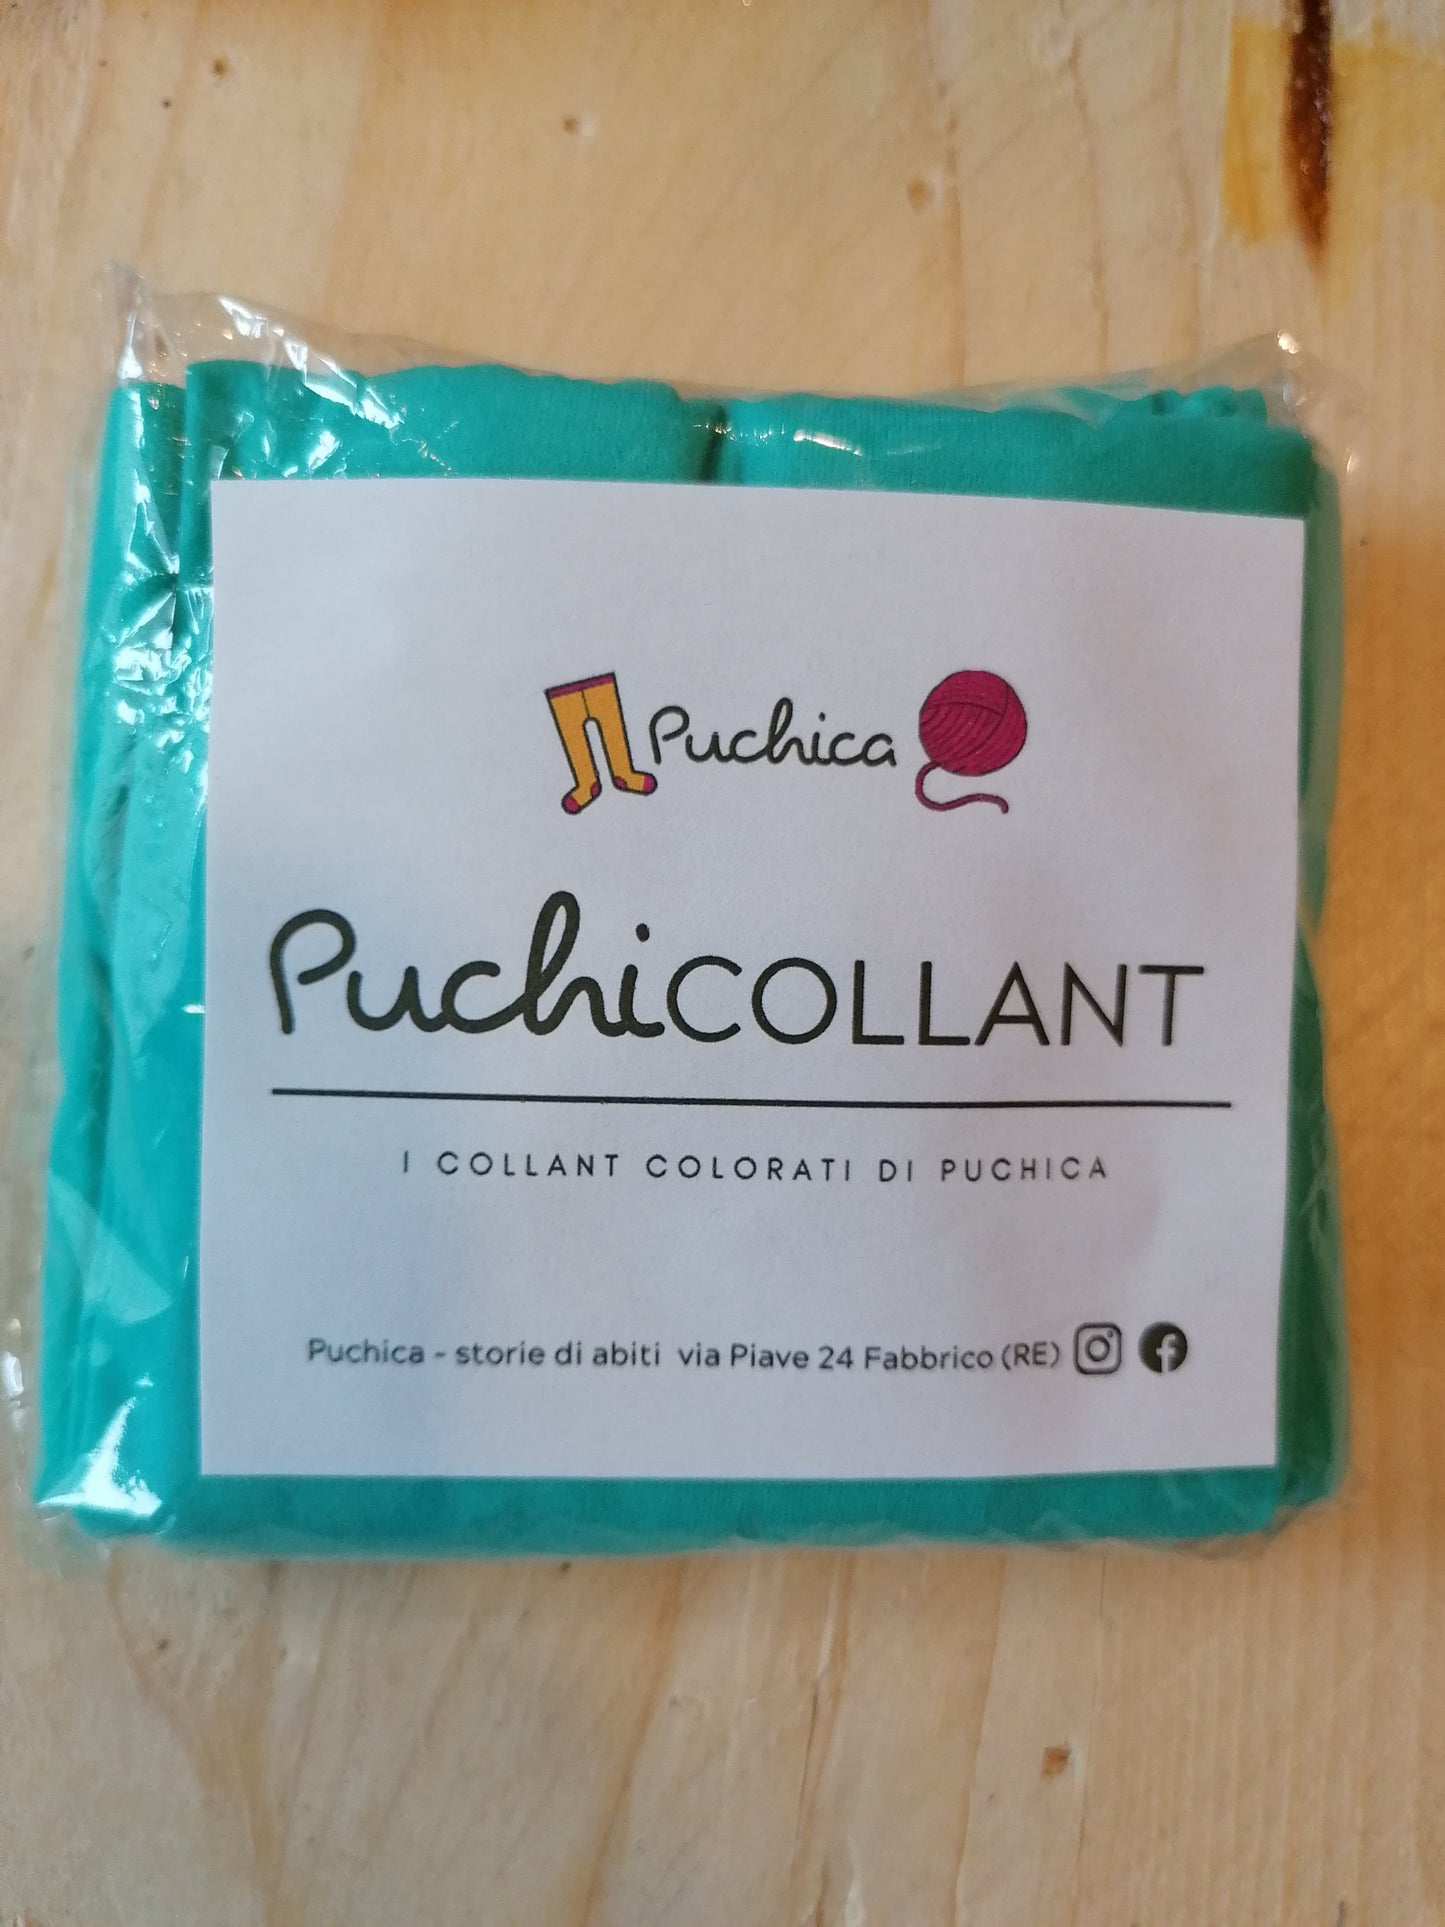 PuchiCOLLANT - i collant colorati di Puchica